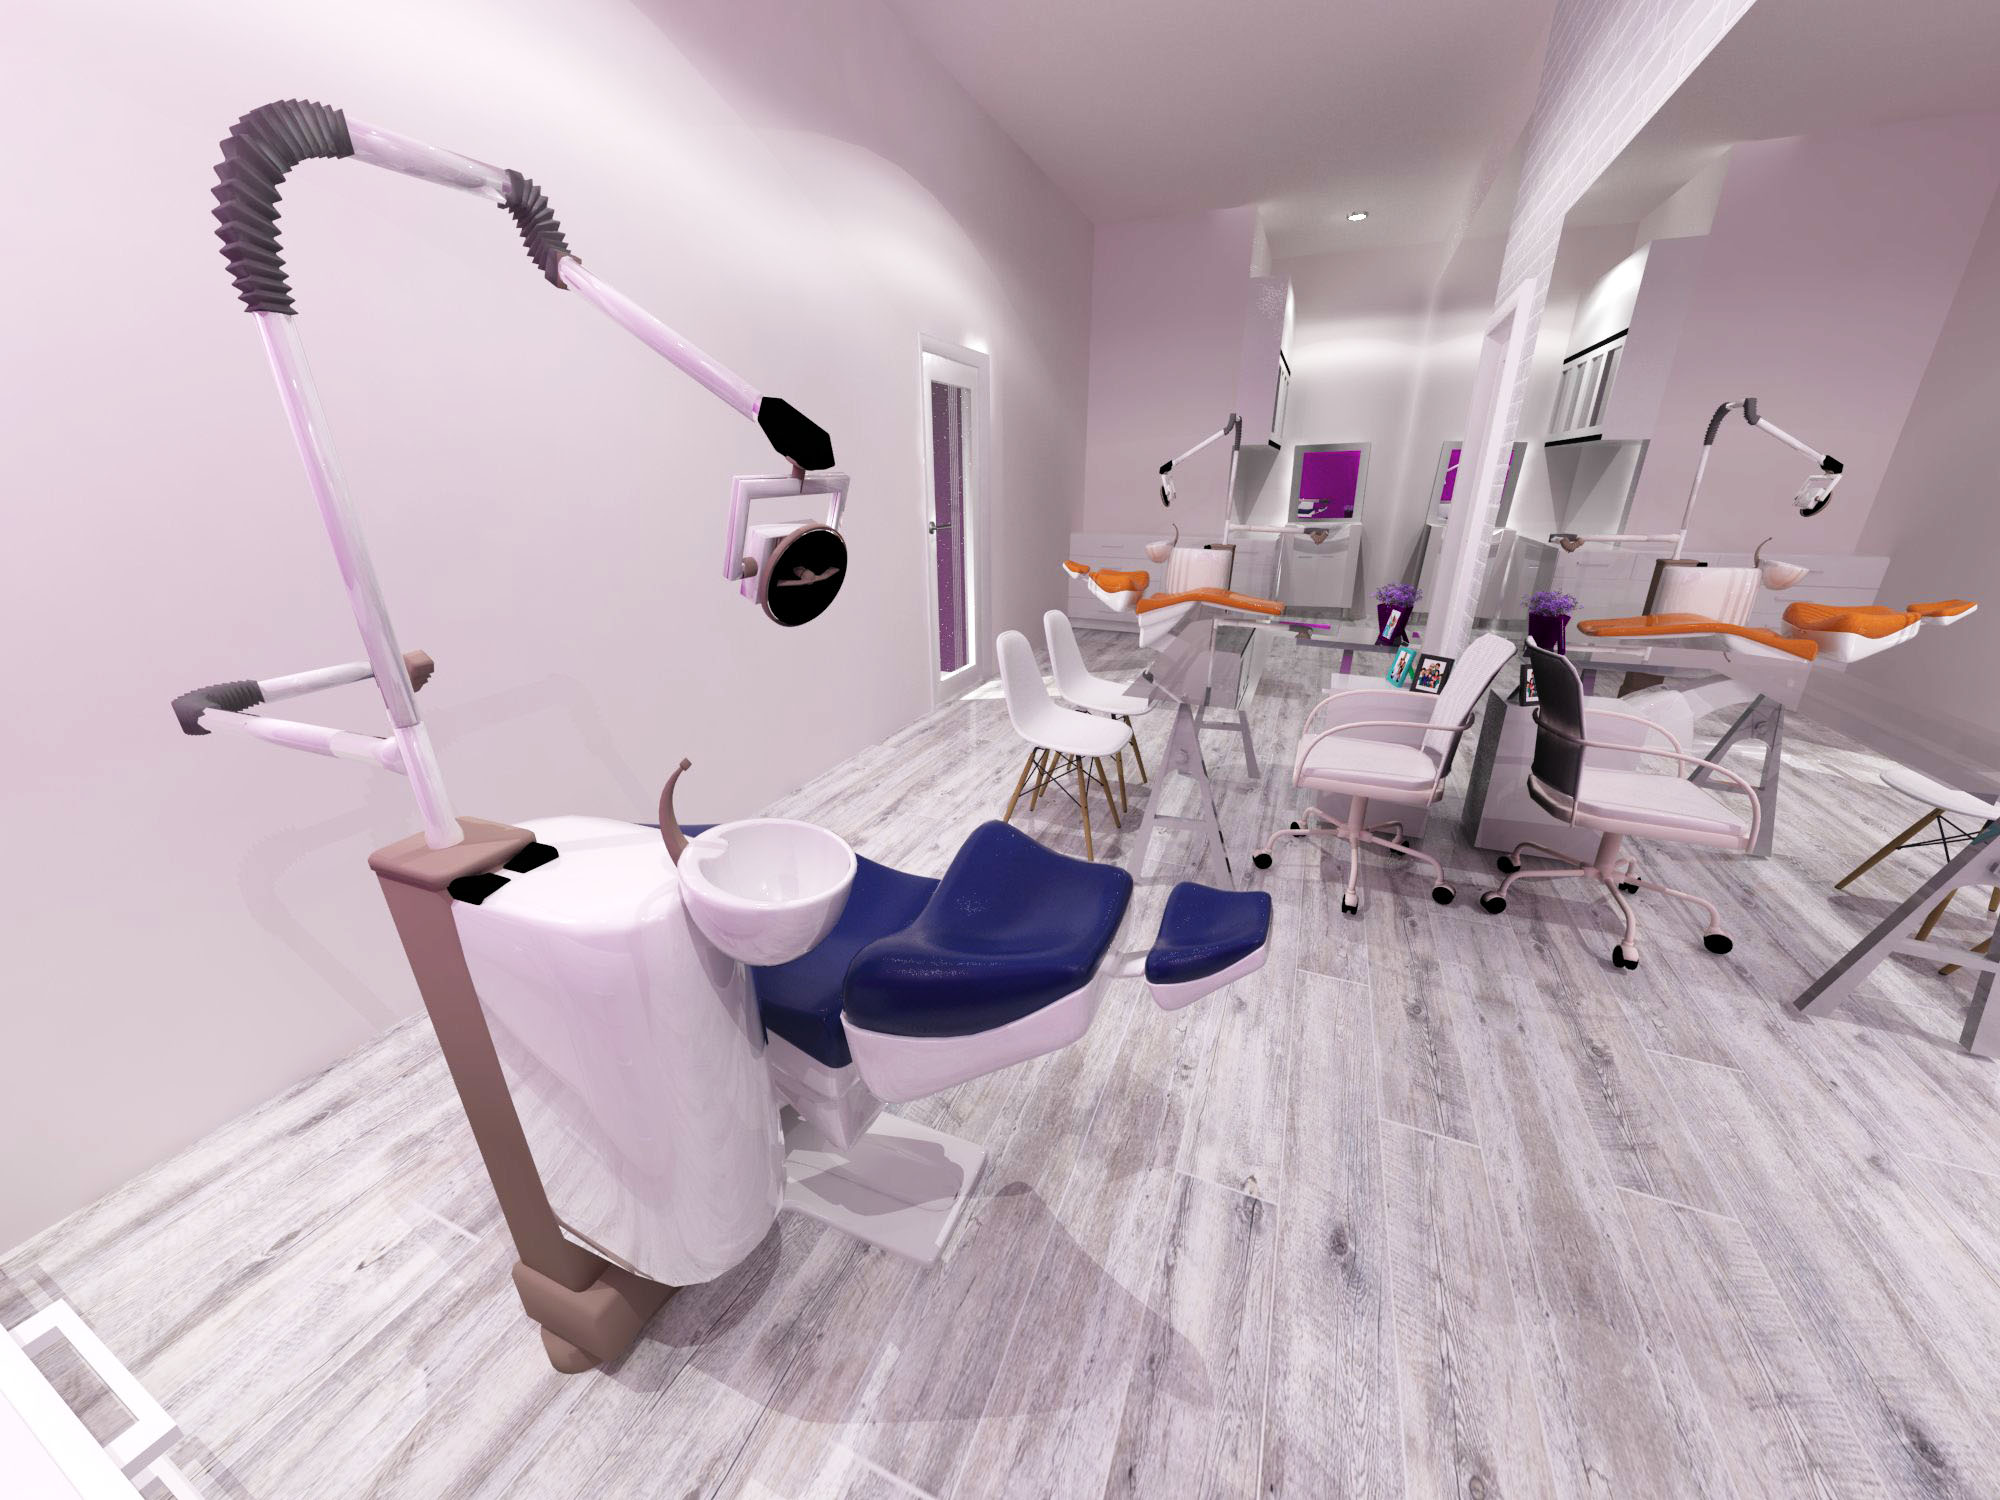 Ruang Praktek - Klinik Gigi, Tanggerang | InteriorDesign.id